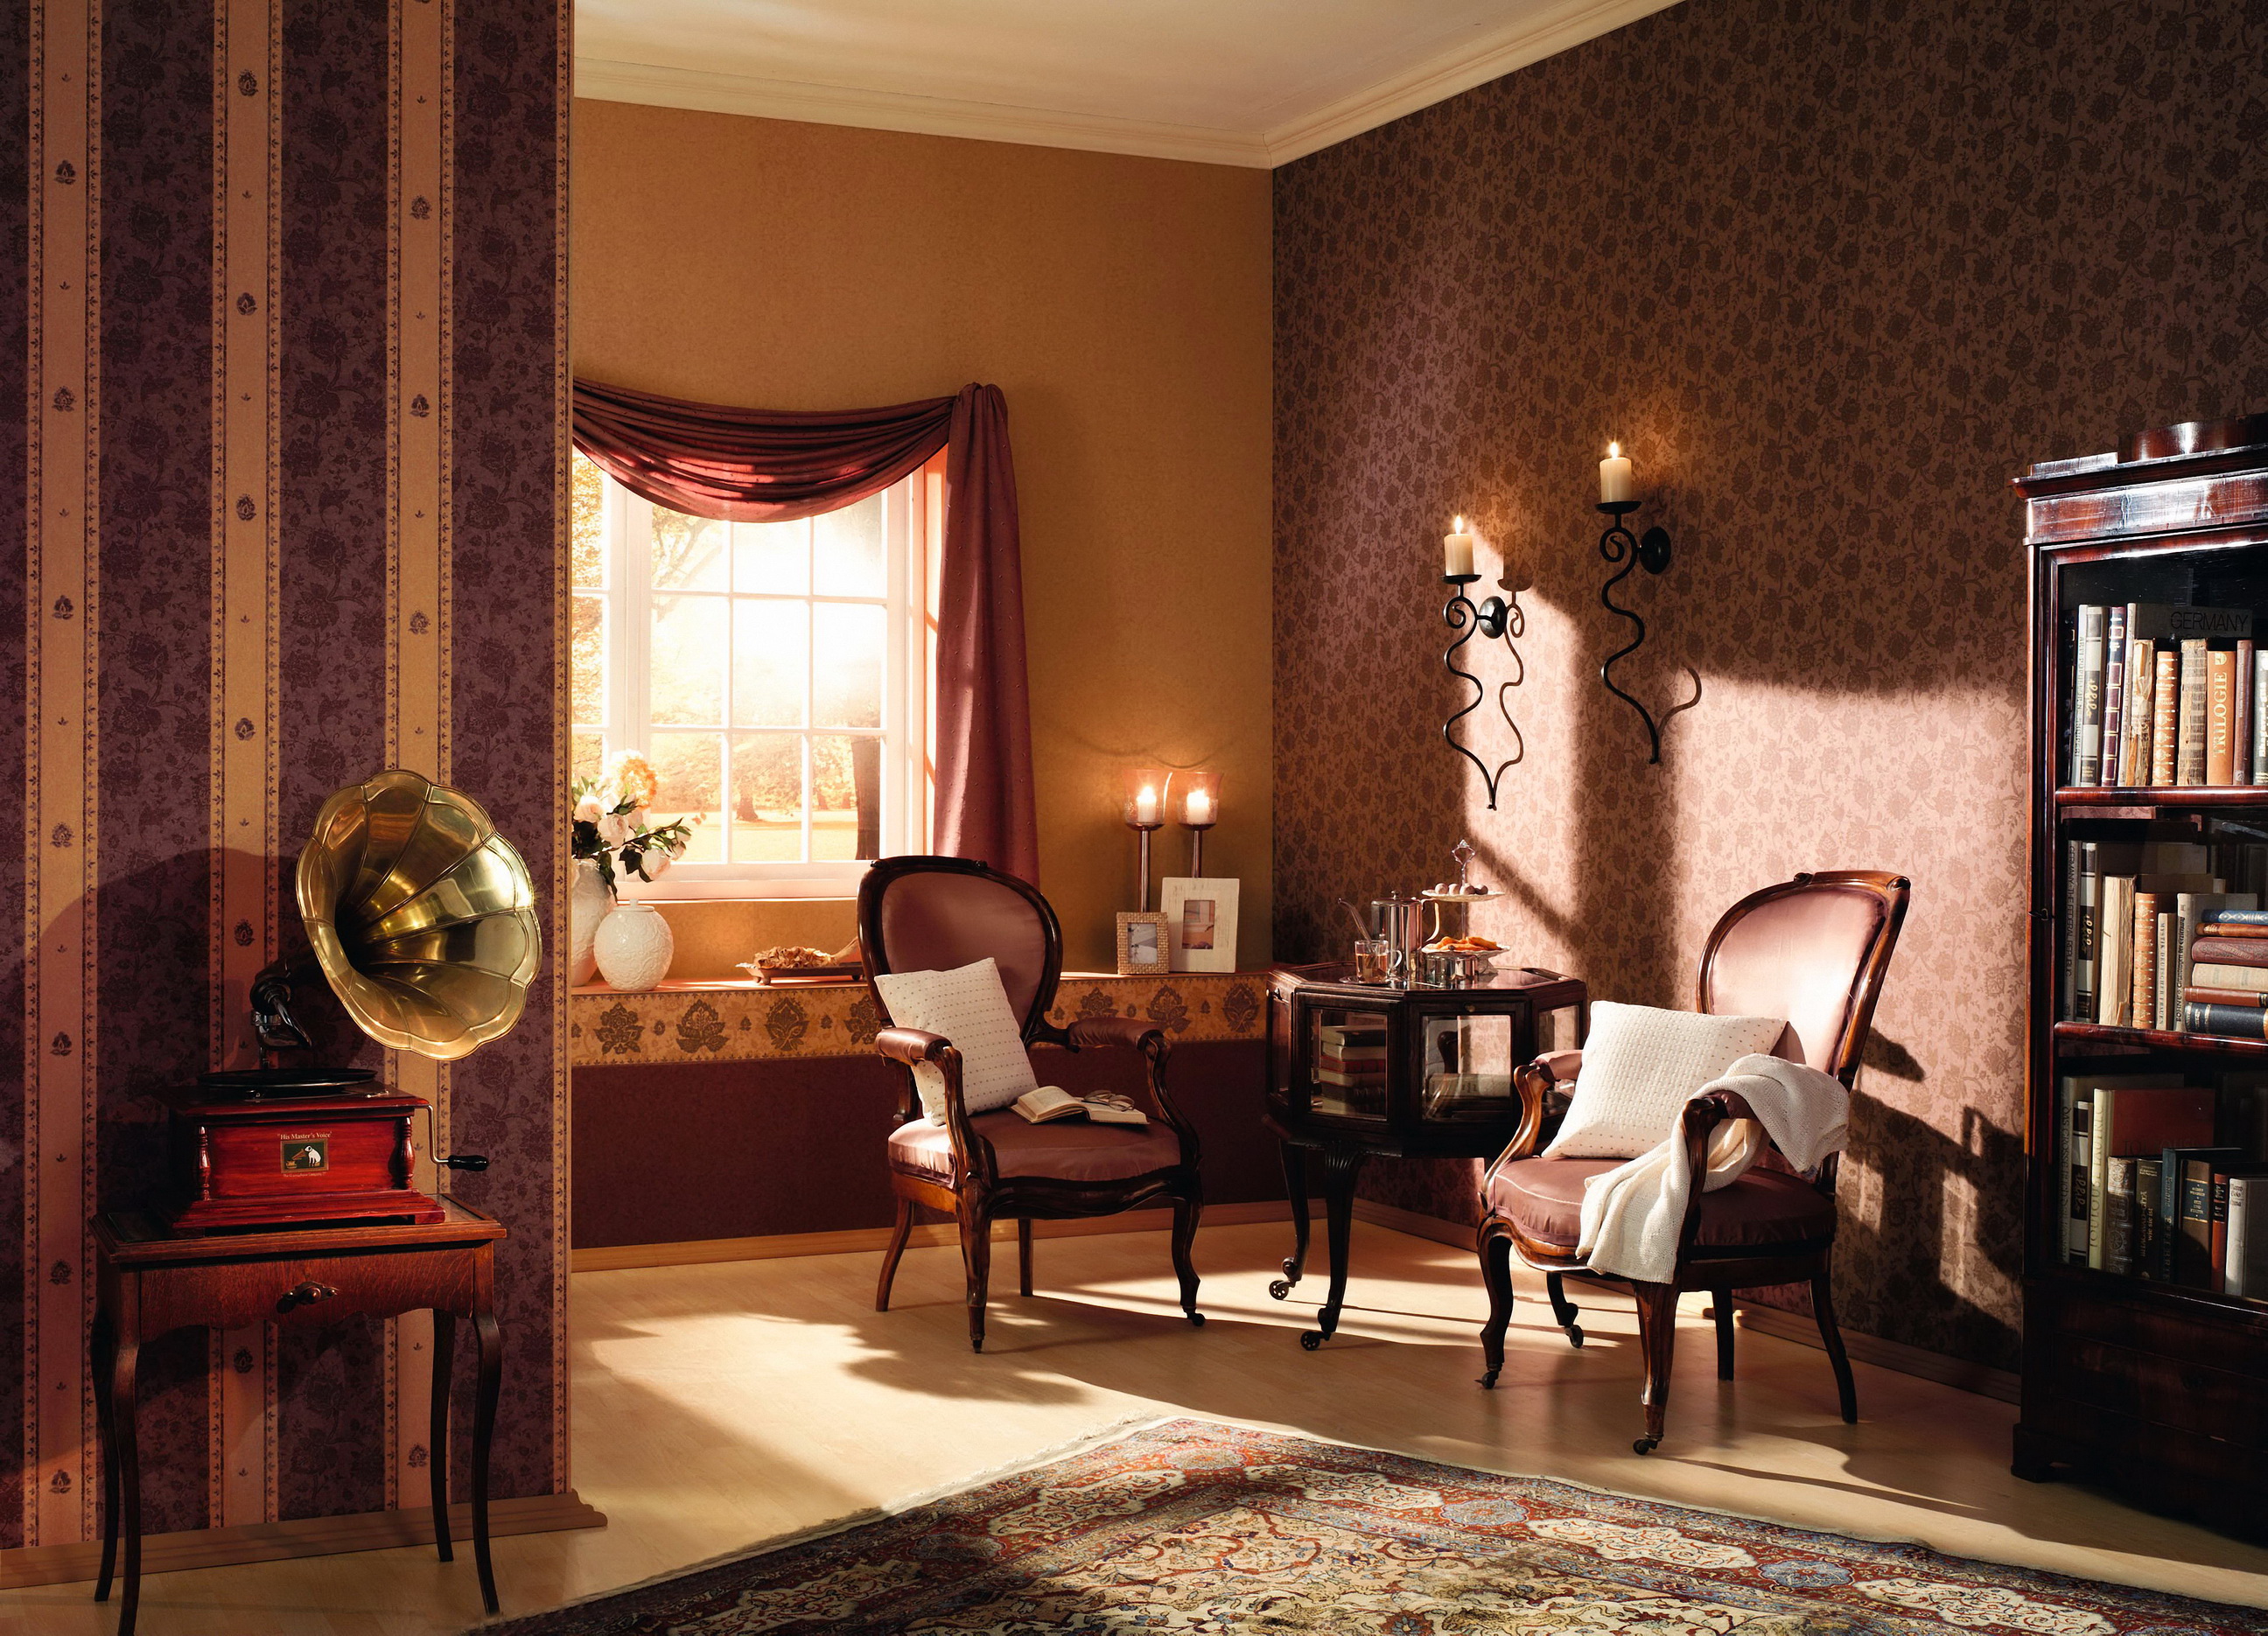 интерьер камин кресла люстра шторы interior fireplace chairs chandelier curtains загрузить